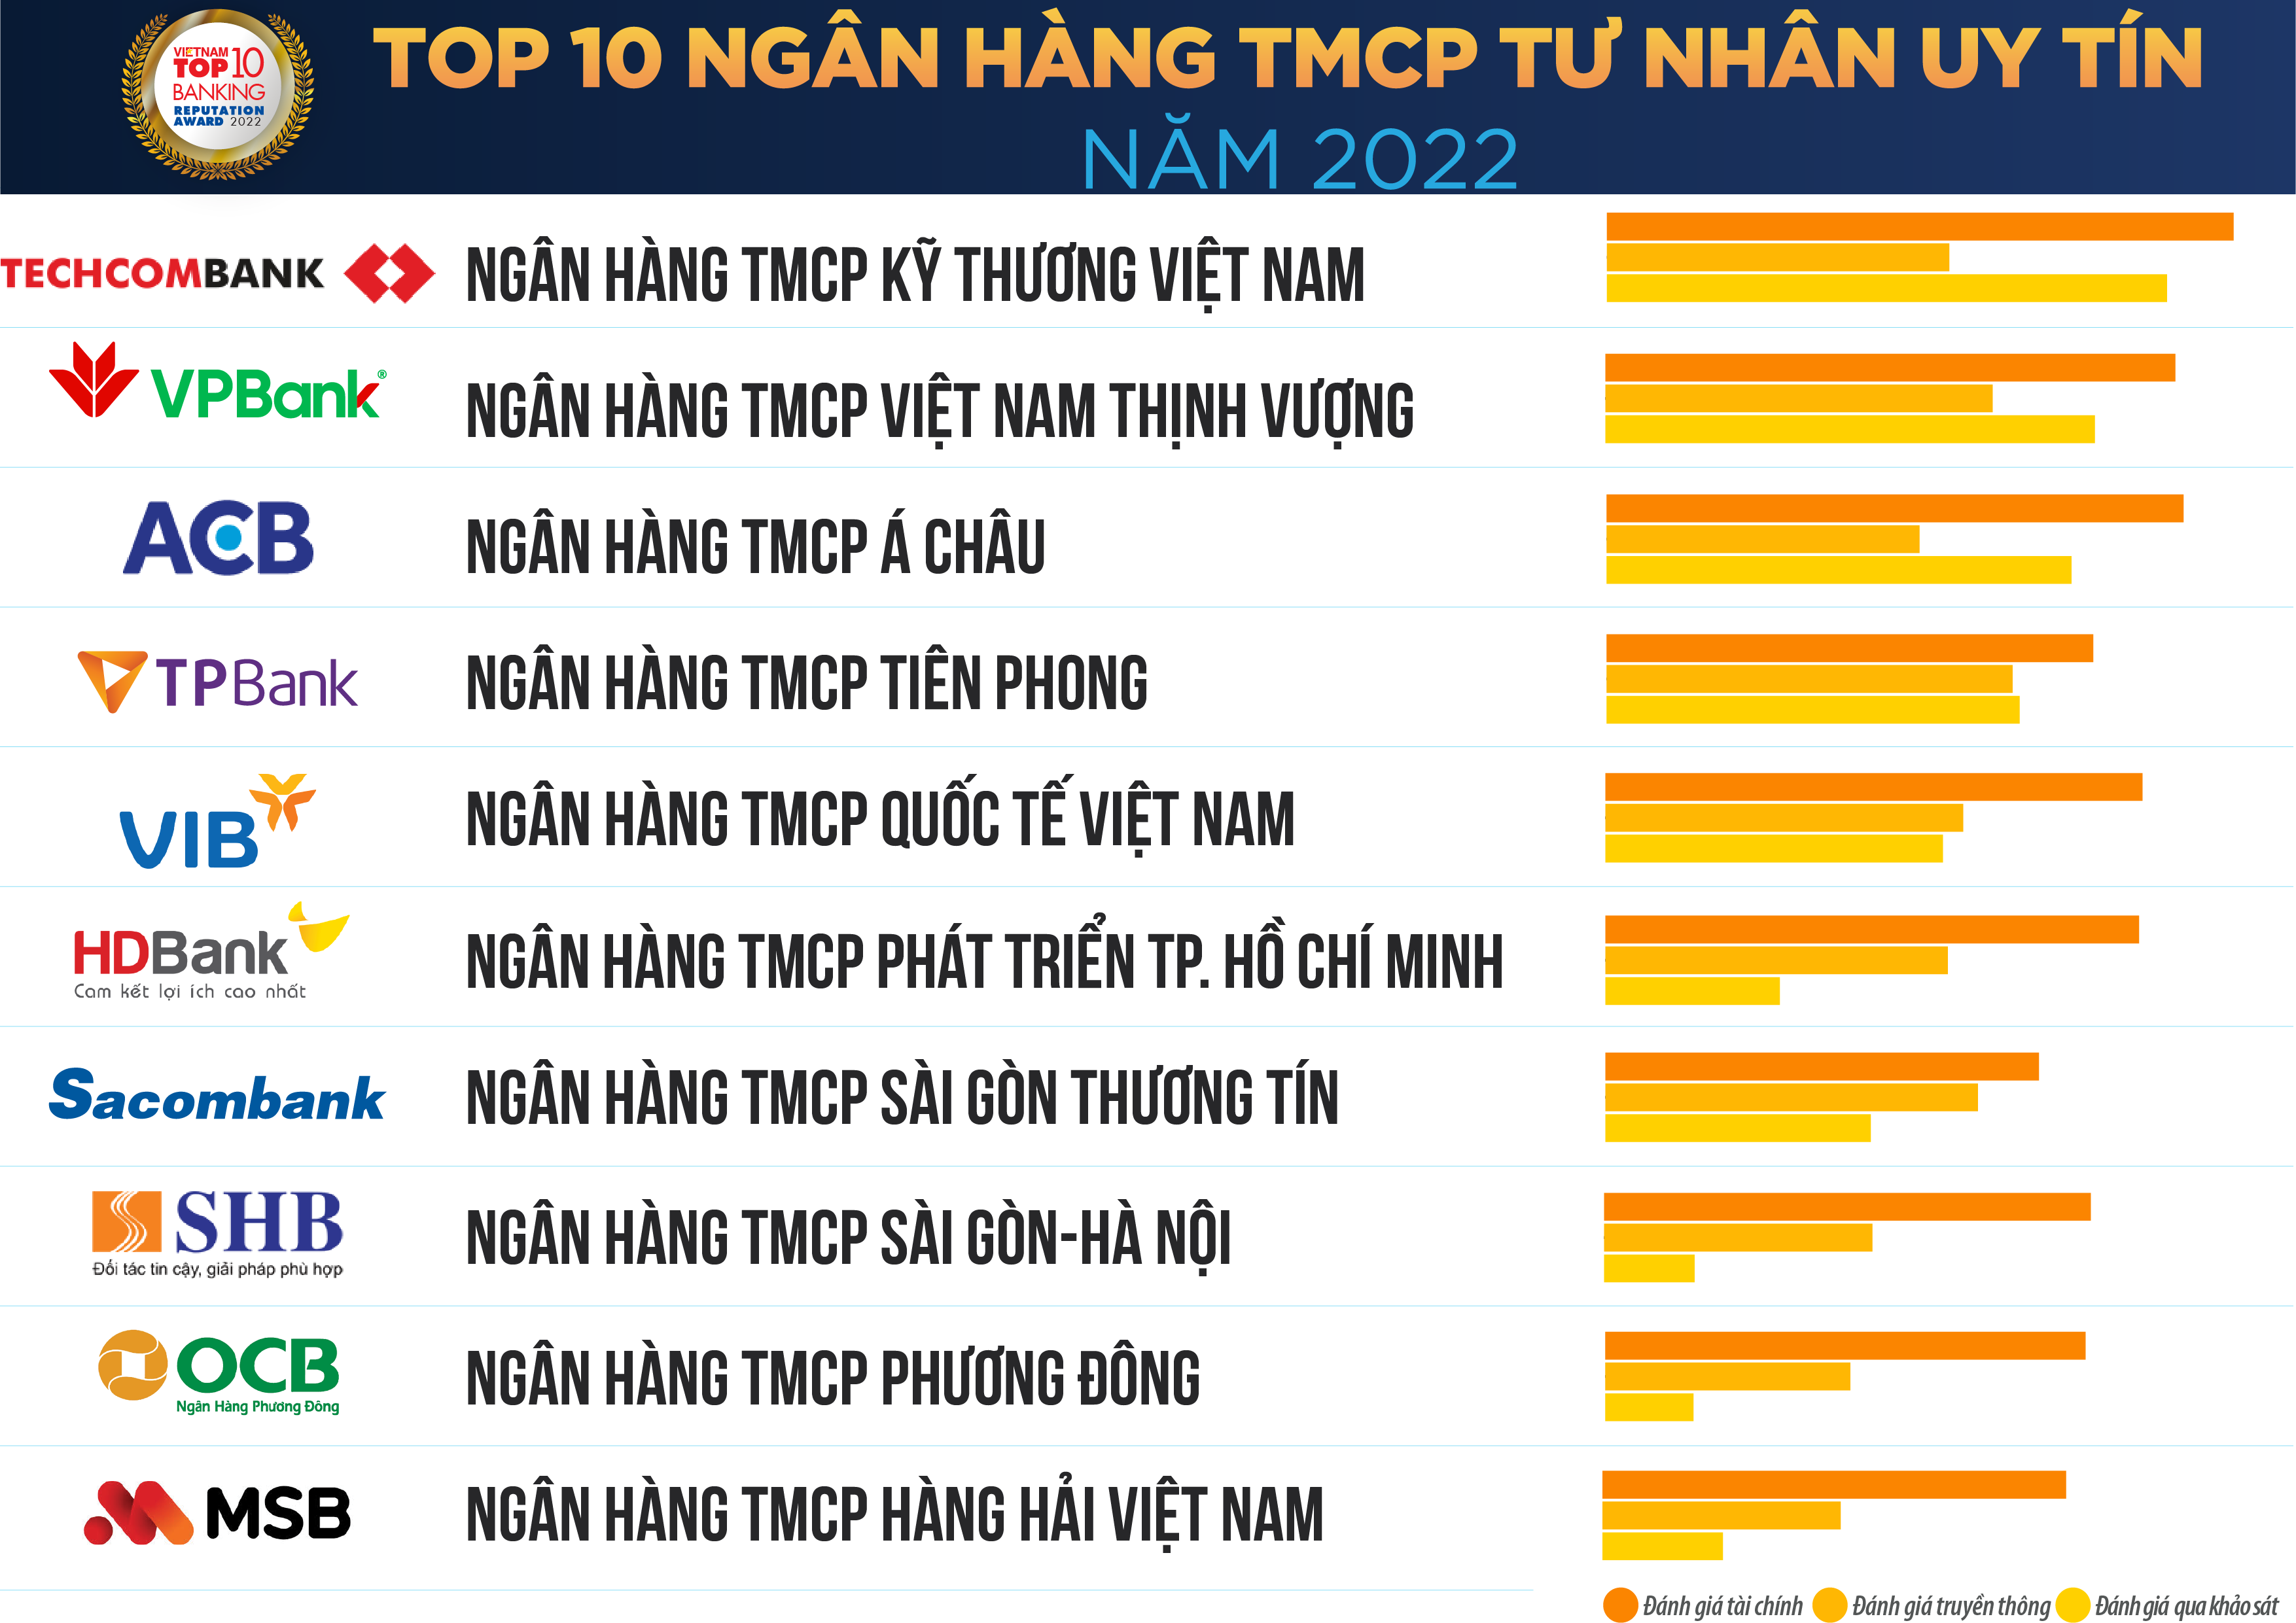 Top 10 ngân hàng thương mại Việt Nam uy tín năm 2022 – Gia Sư Minh Đức